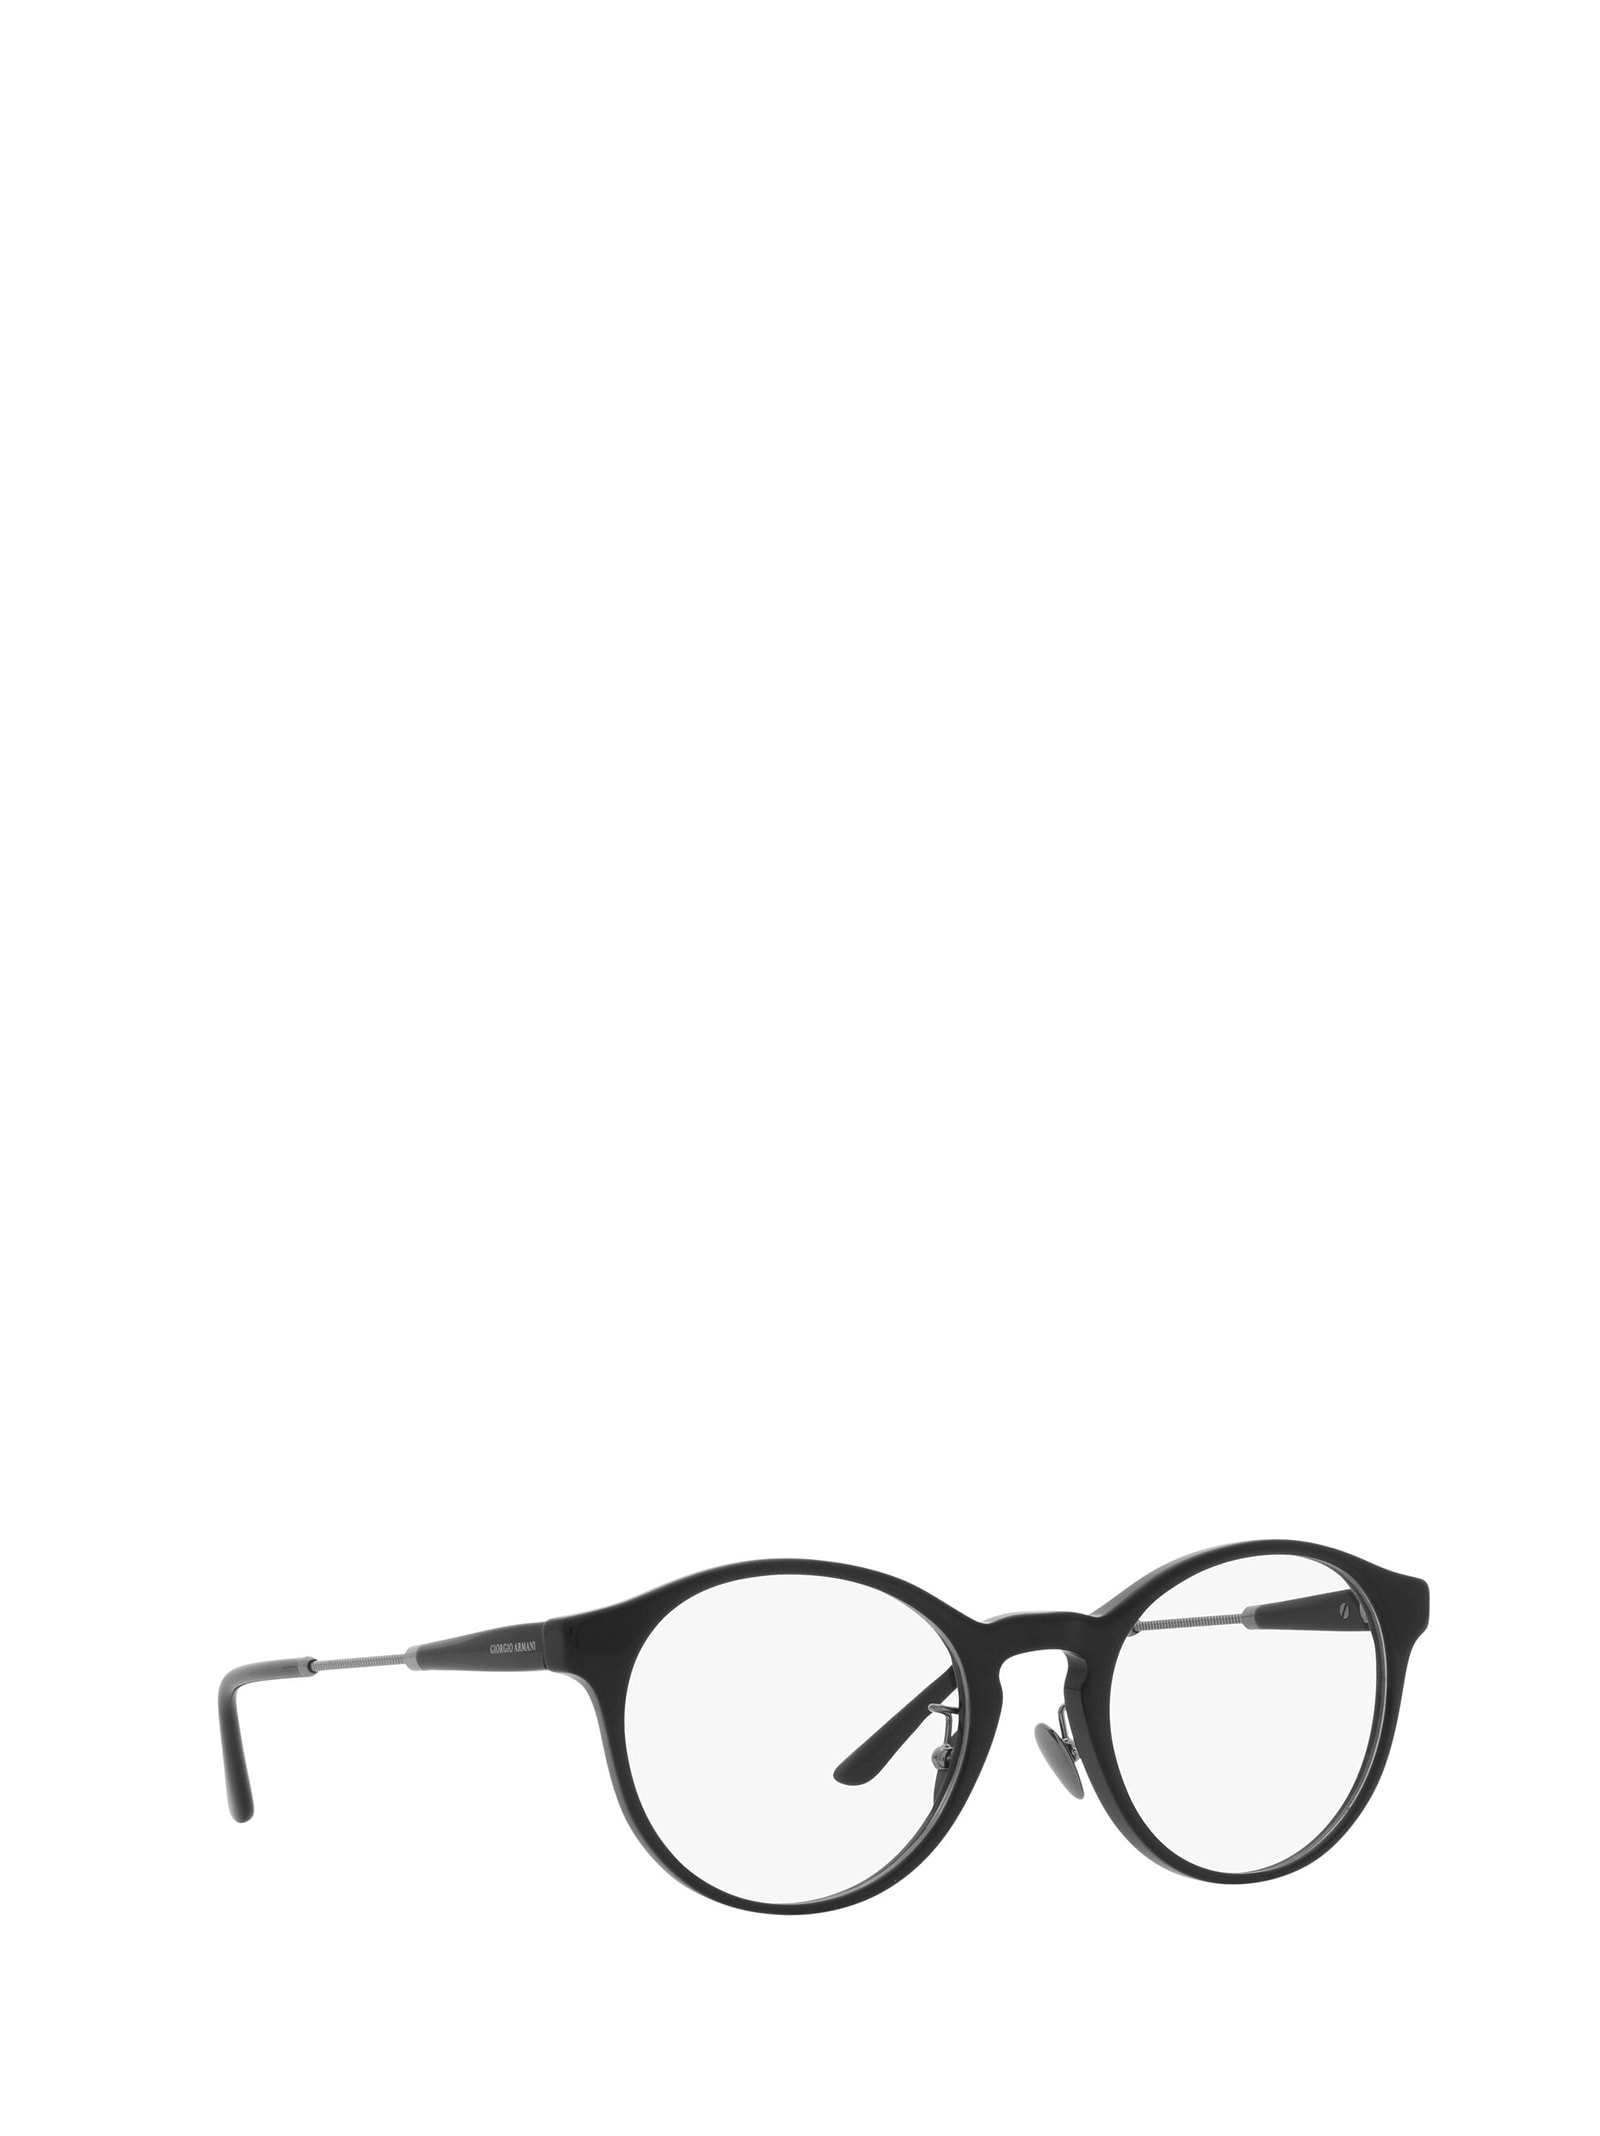 Giorgio Black Round Glasses | ModeSens